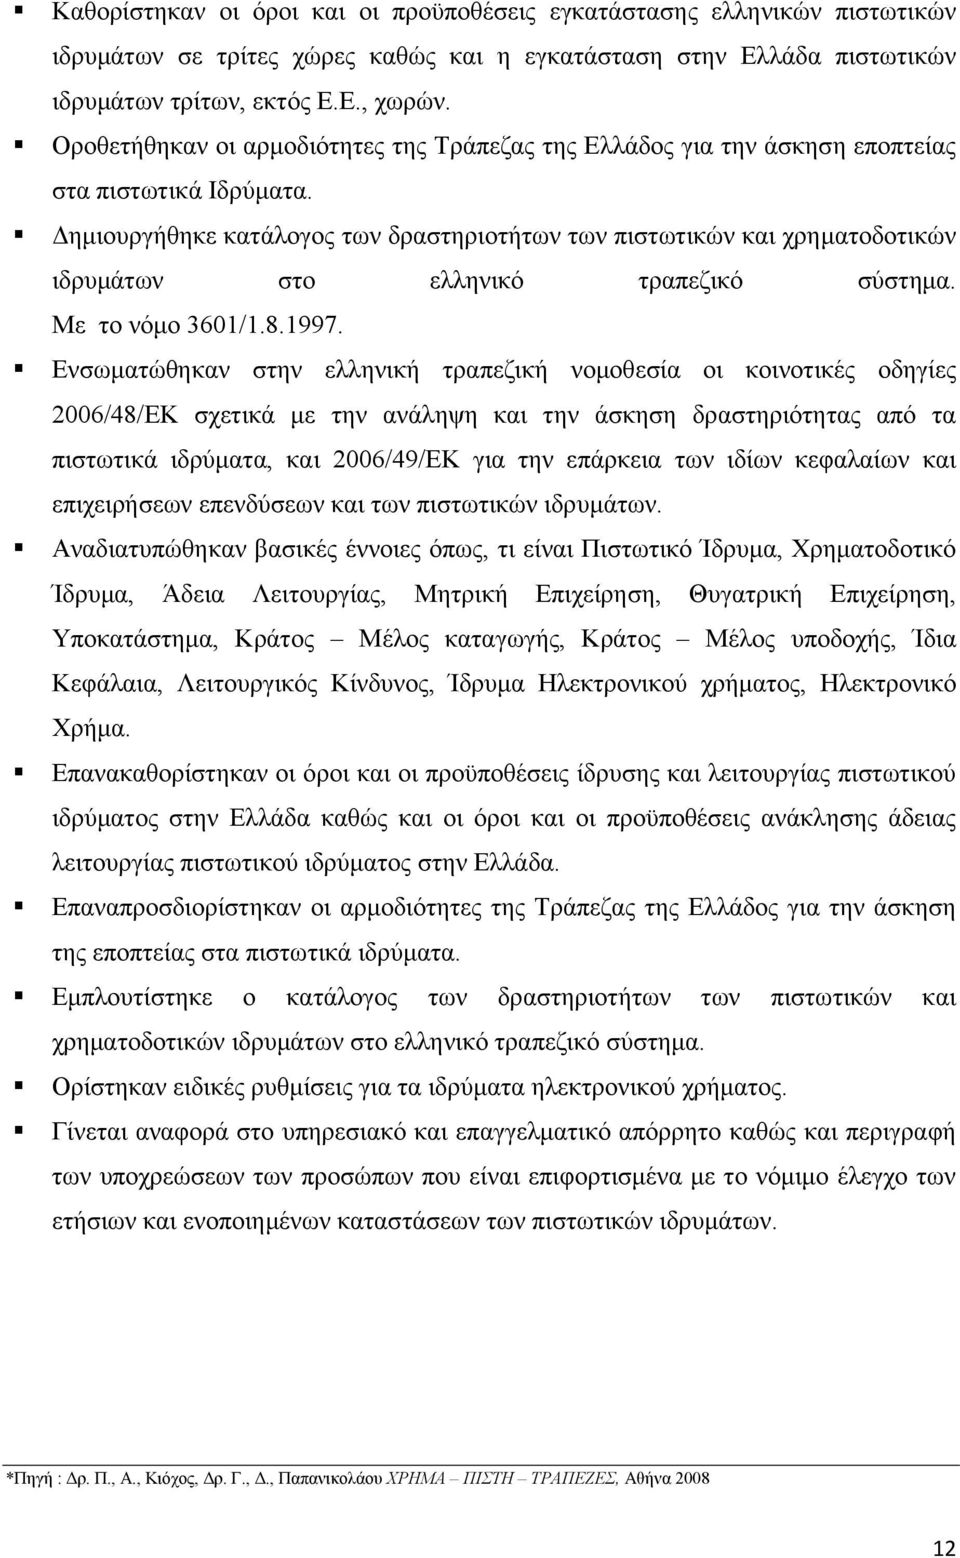 Δημιουργήθηκε κατάλογος των δραστηριοτήτων των πιστωτικών και χρηματοδοτικών ιδρυμάτων στο ελληνικό τραπεζικό σύστημα. Με το νόμο 3601/1.8.1997.